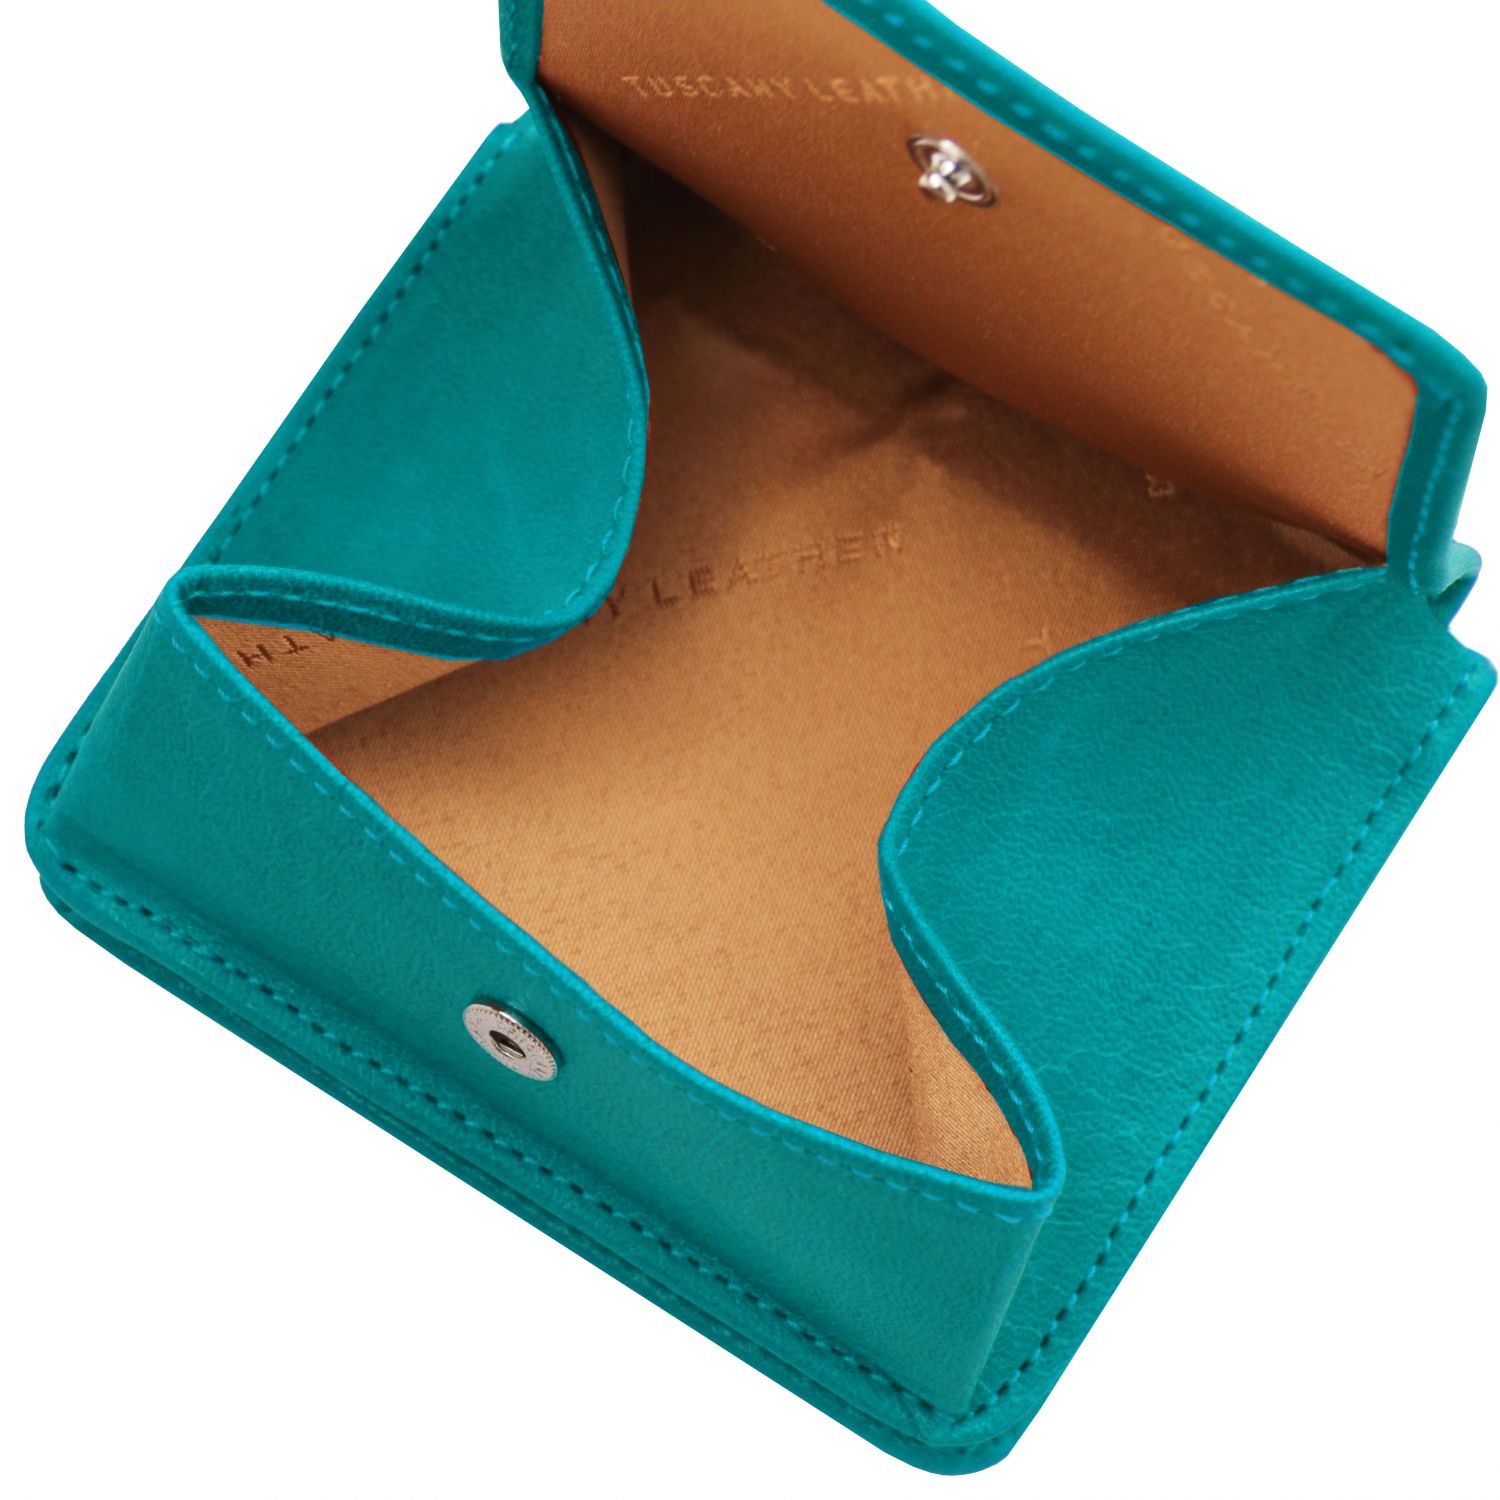 Elégant portefeuille en cuir avec porte monnaie - Turquoise (TL142059)